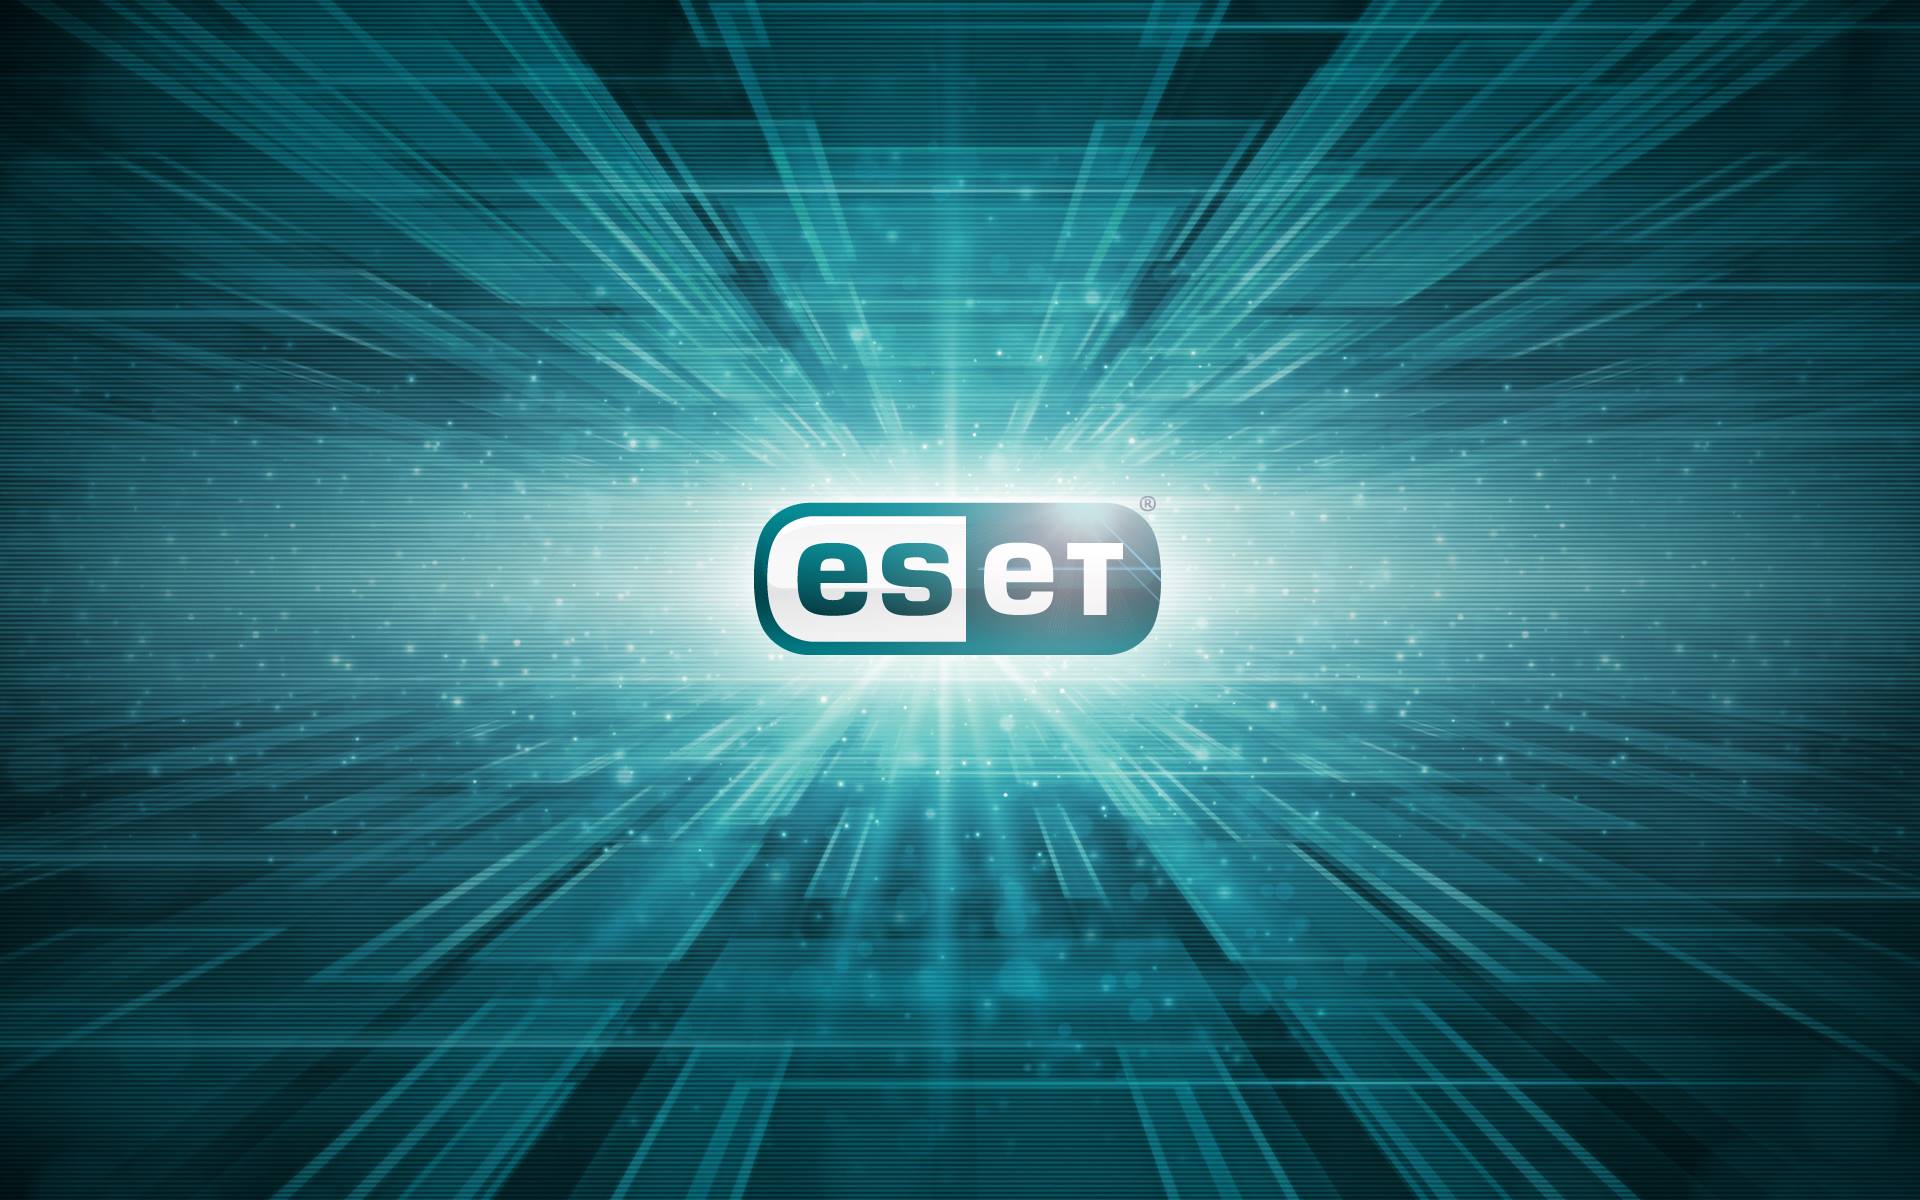 Les CERT européens accèdent gratuitement au réseau d’informations sur les menaces d’ESET pendant la pandémie de COVID-19